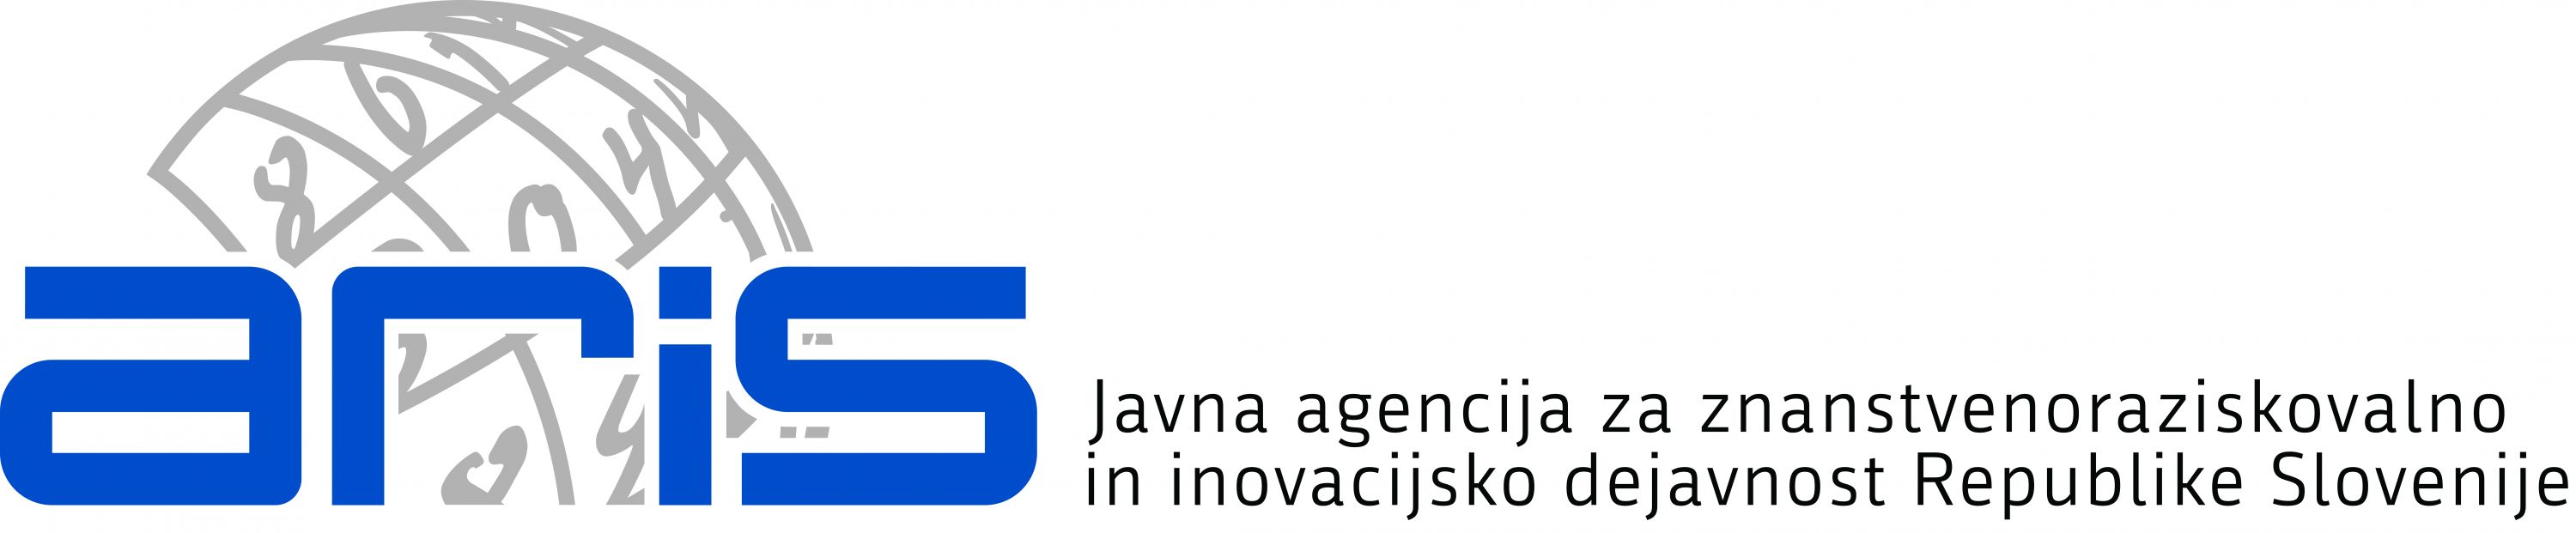 Logotip Javne agencije za znanstvenoraziskovalno in inovacijsko dejavnost Republike Slovenije